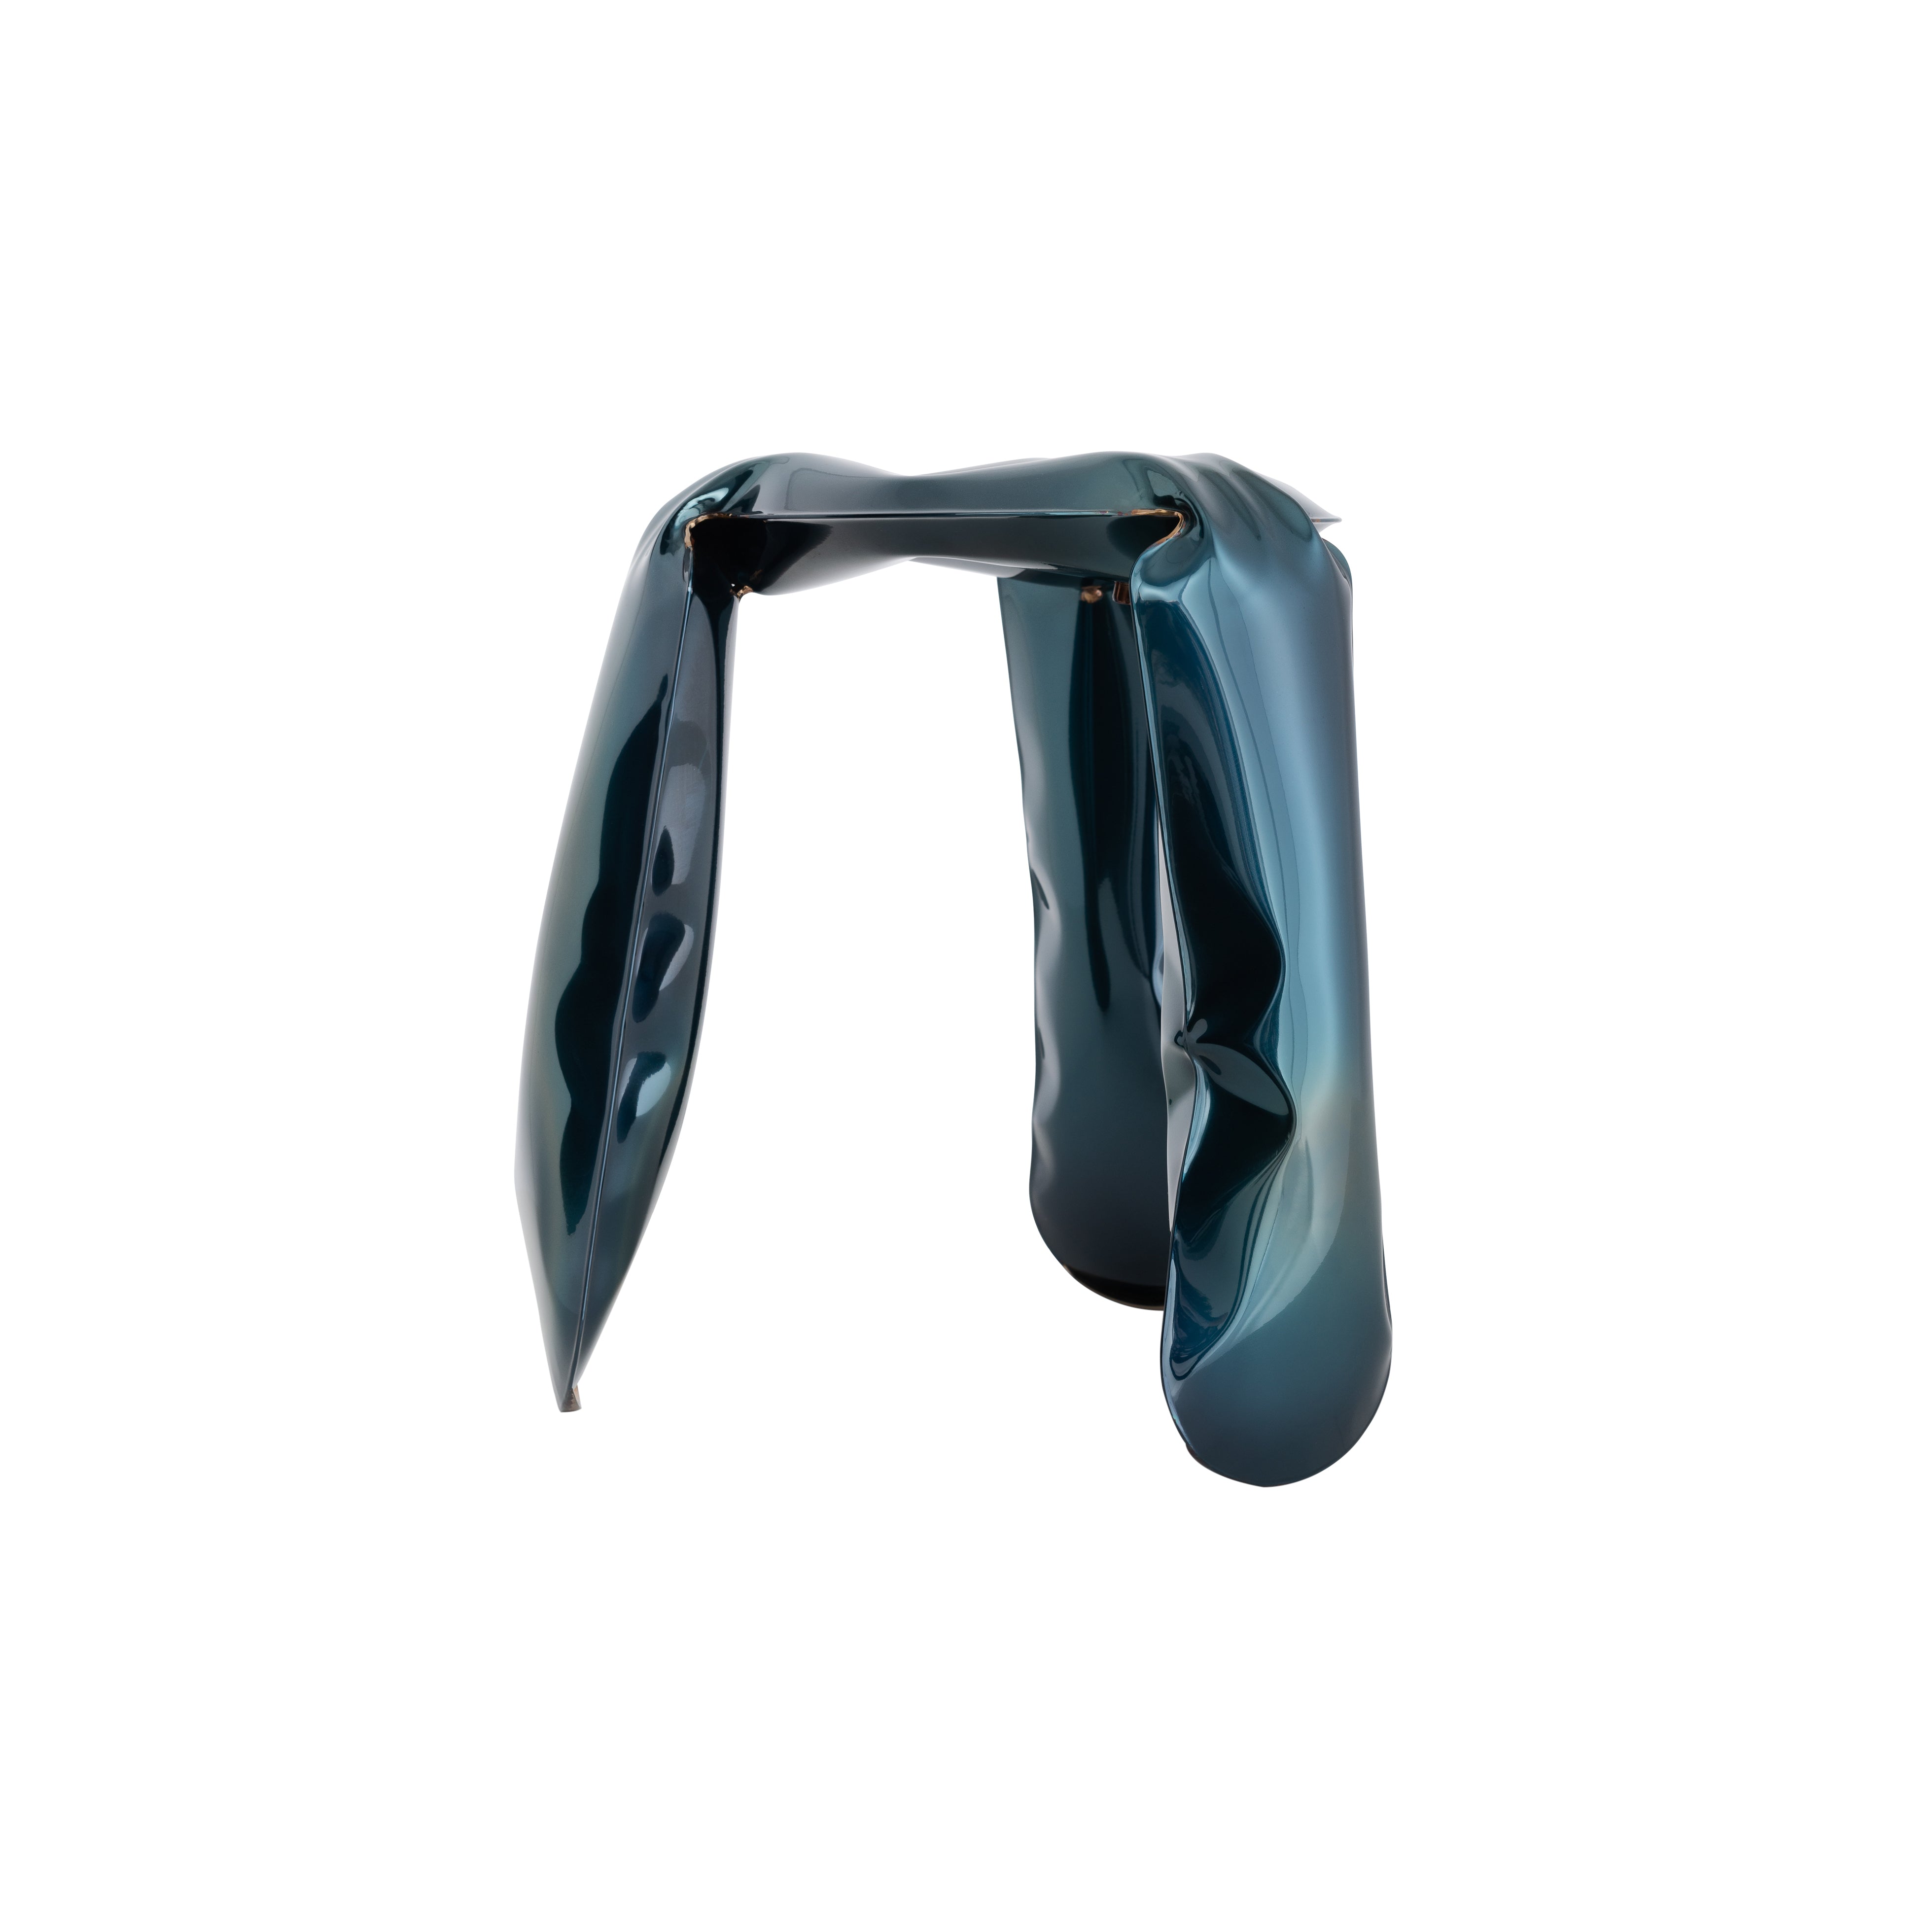 Plopp Metal Mini Footstool: Cosmic Blue Stainless Steel